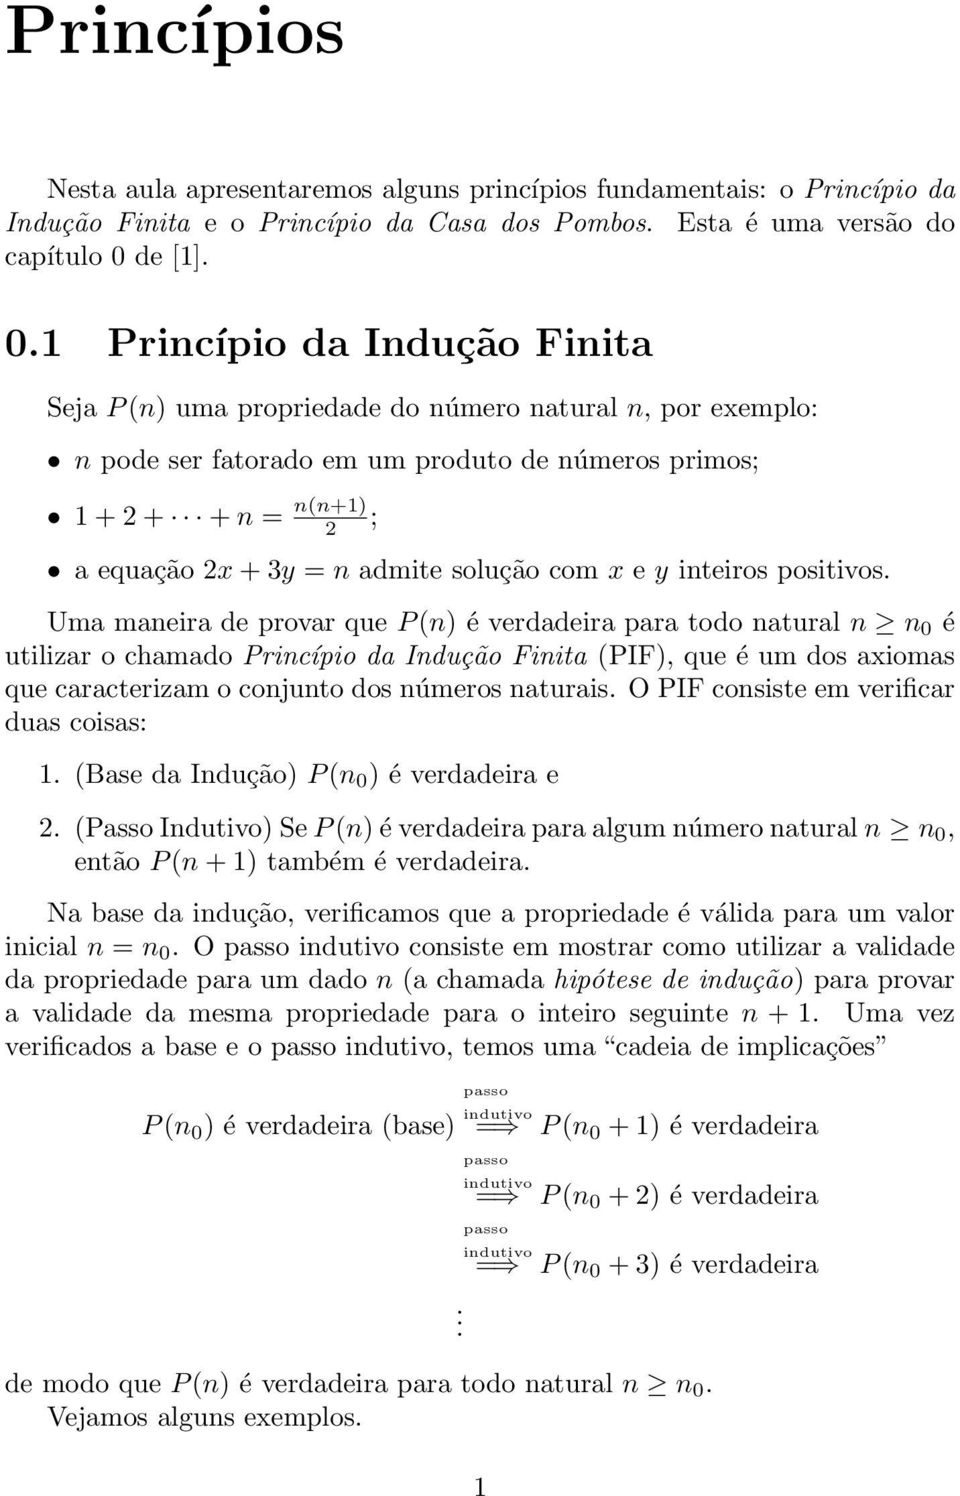 1 Pricípio da Idução Fiita Seja P( uma propriedade do úmero atural, por exemplo: pode ser fatorado em um produto de úmeros primos; 1++ + (+1 ; a equação x+3y admite solução com x e y iteiros